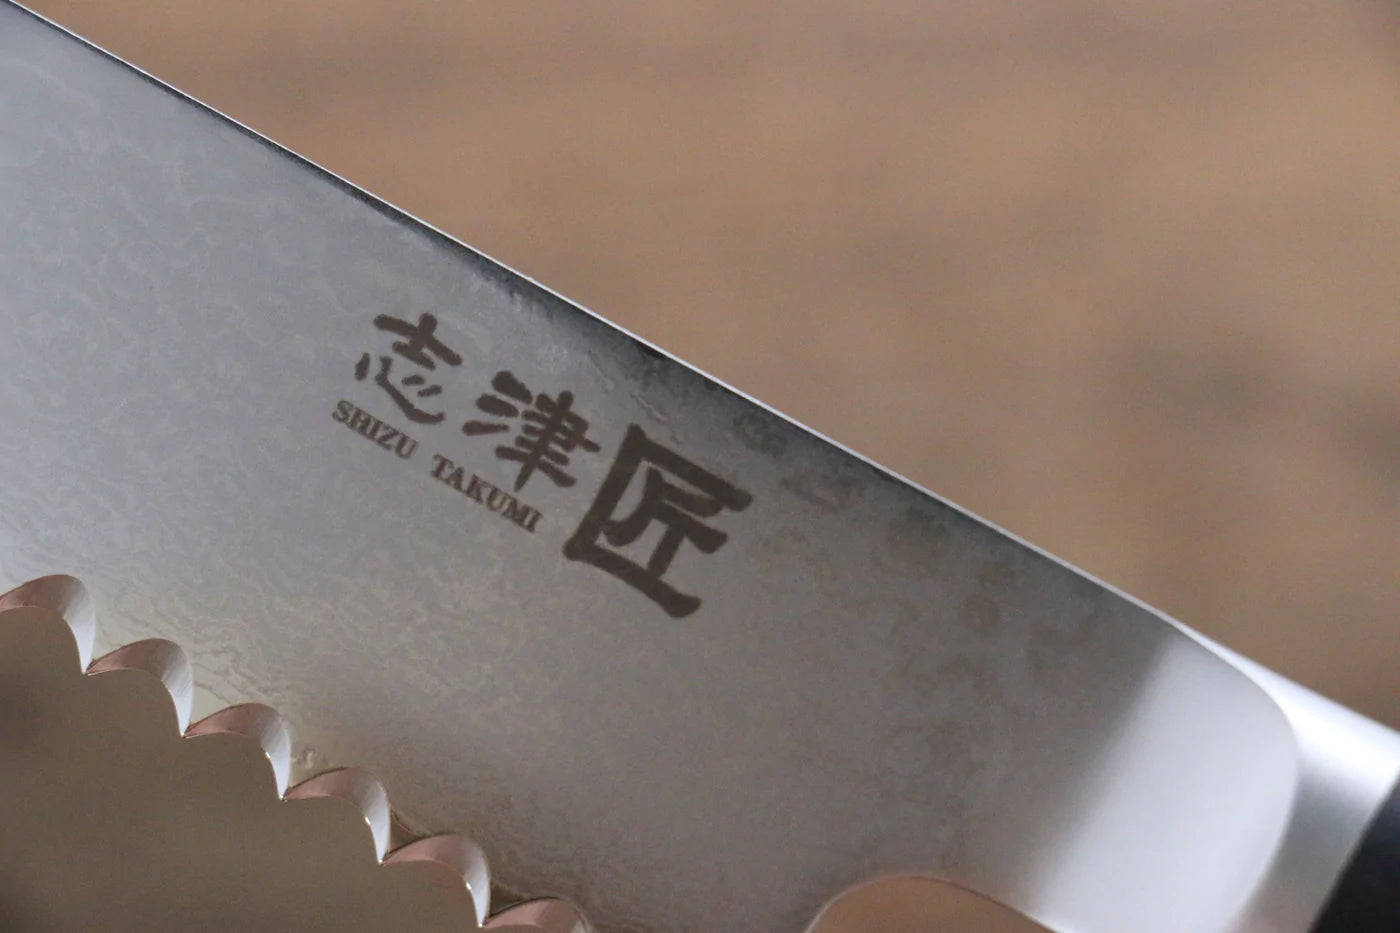 Thương hiệu Miyako  AUS8 Thép Damascus 33 lớp Dao cắt bánh mì chuyên dụng dao Nhật 240mm